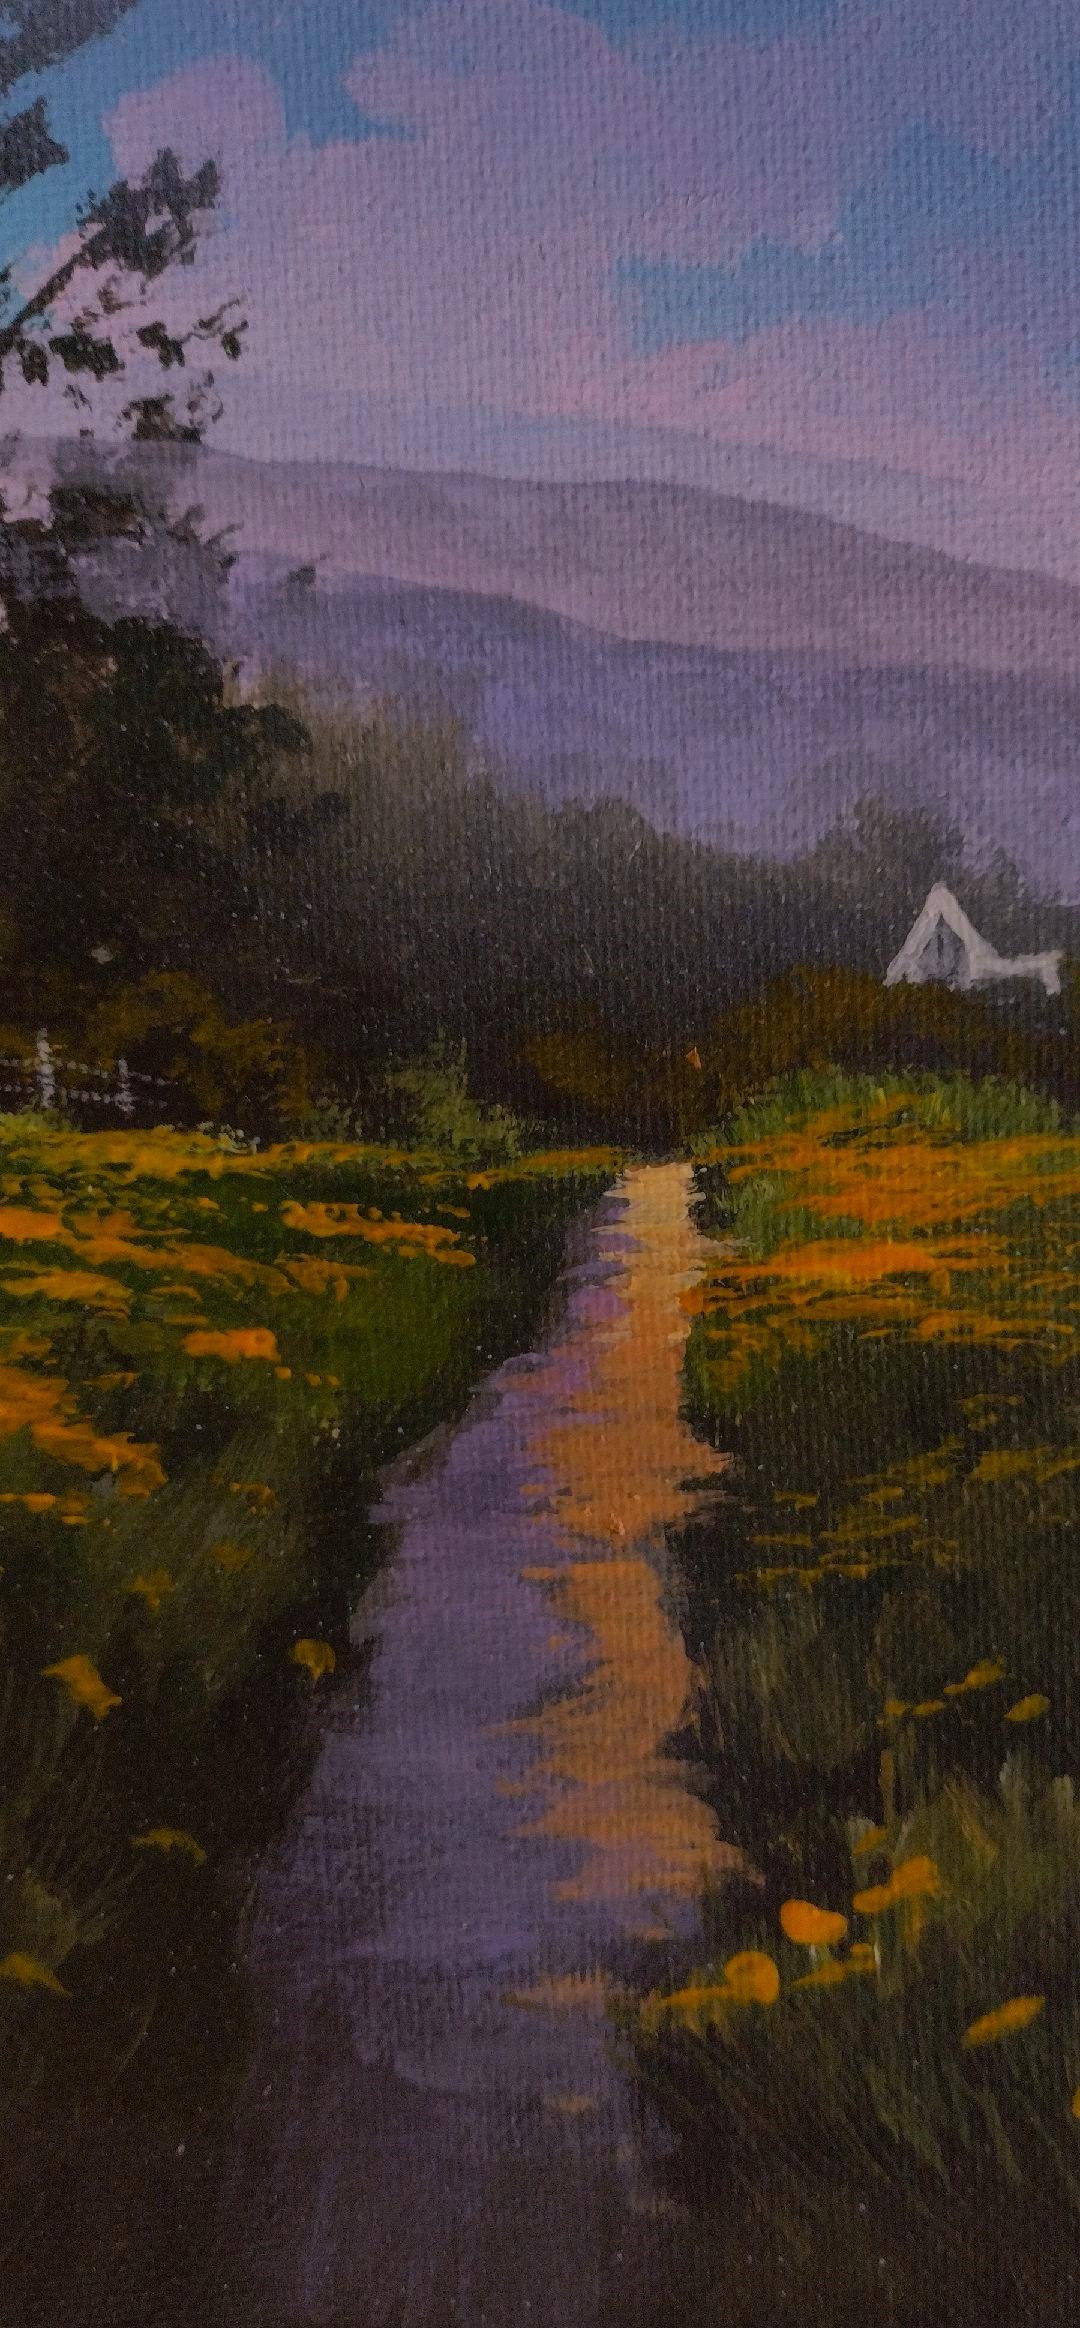 Path avant - Paysage original à l'acrylique sur toile avec maison dans le pays - Réalisme américain Painting par Douglas 